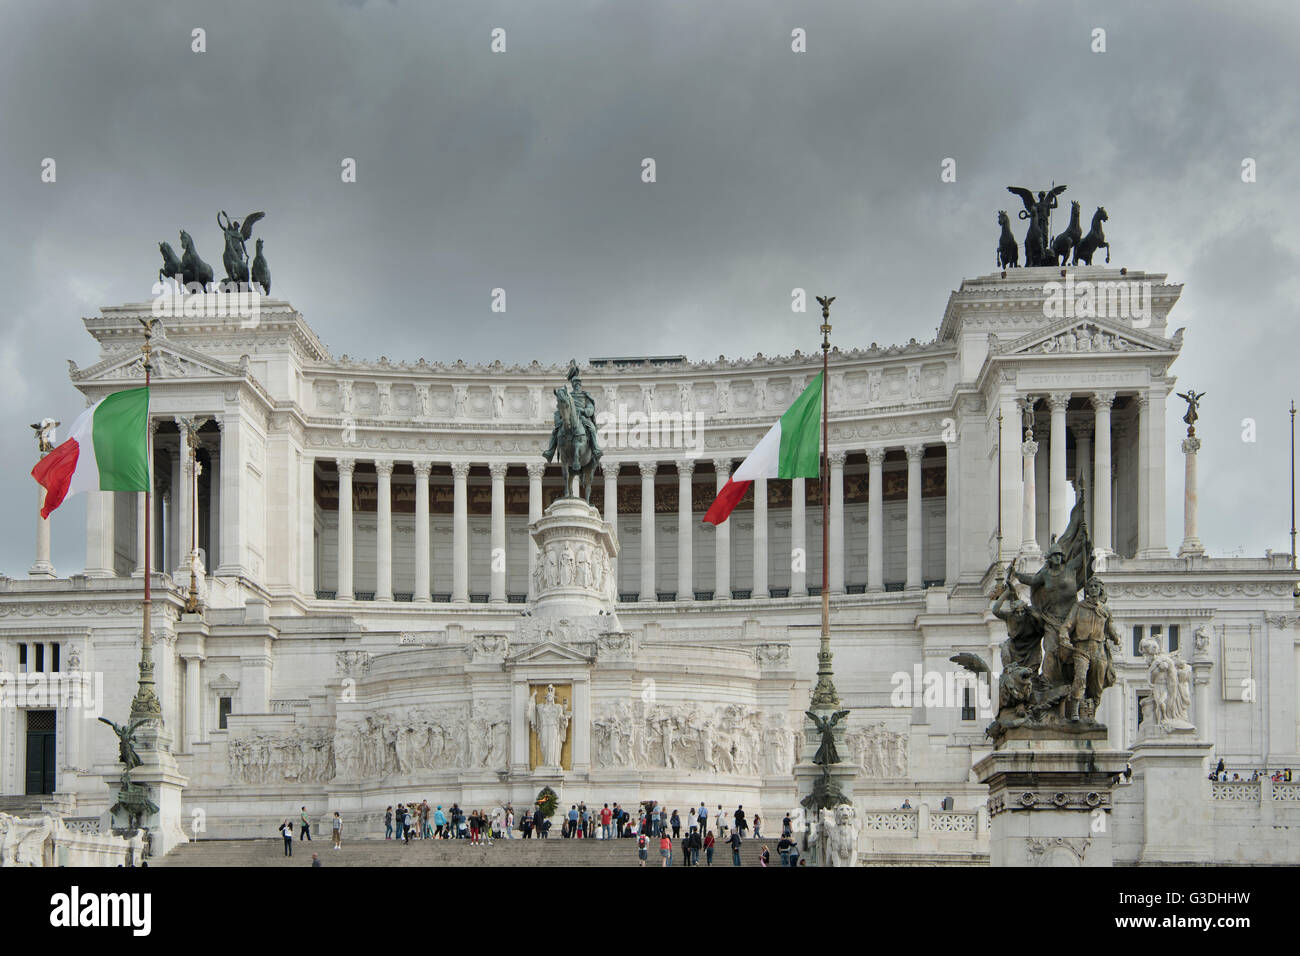 Italia, Roma, Monumento Nazionale a Vittorio Emanuele II., im Volksmund auch als Schreibmaschine bezeichnet. Foto Stock